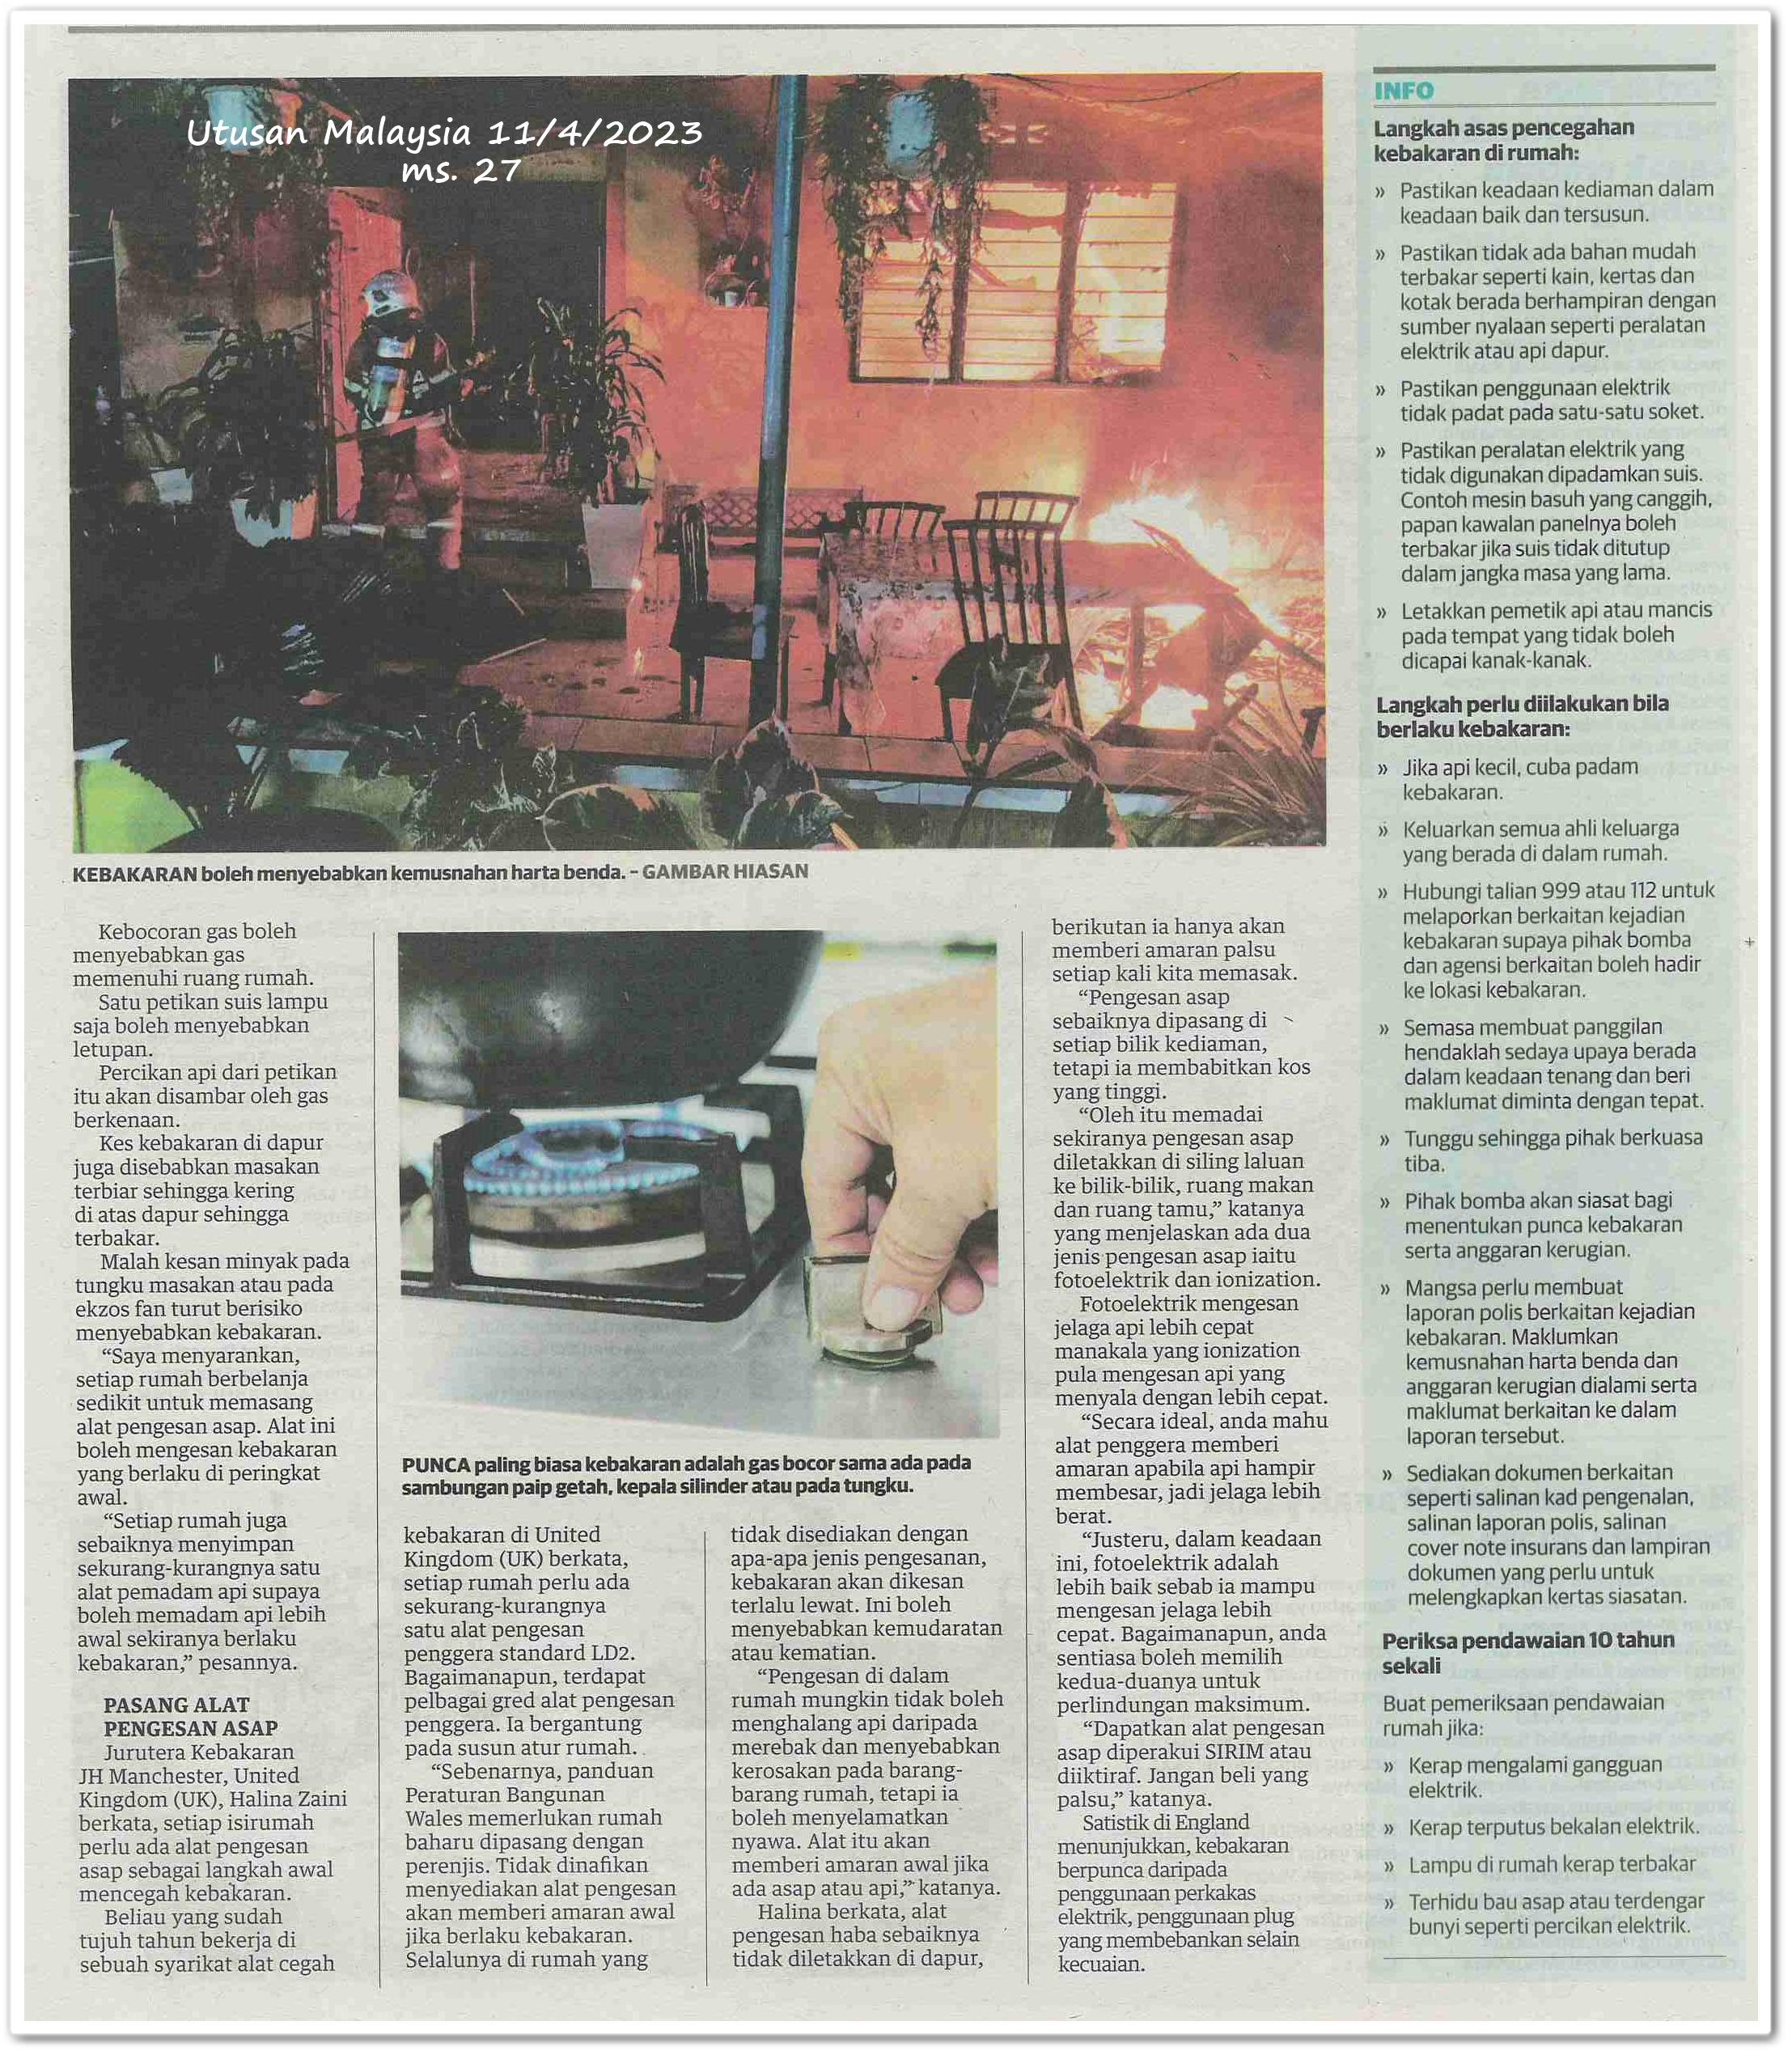 3L punca kebakaran kediaman sendiri - Keratan akhbar Utusan Malaysia 11 April 2023